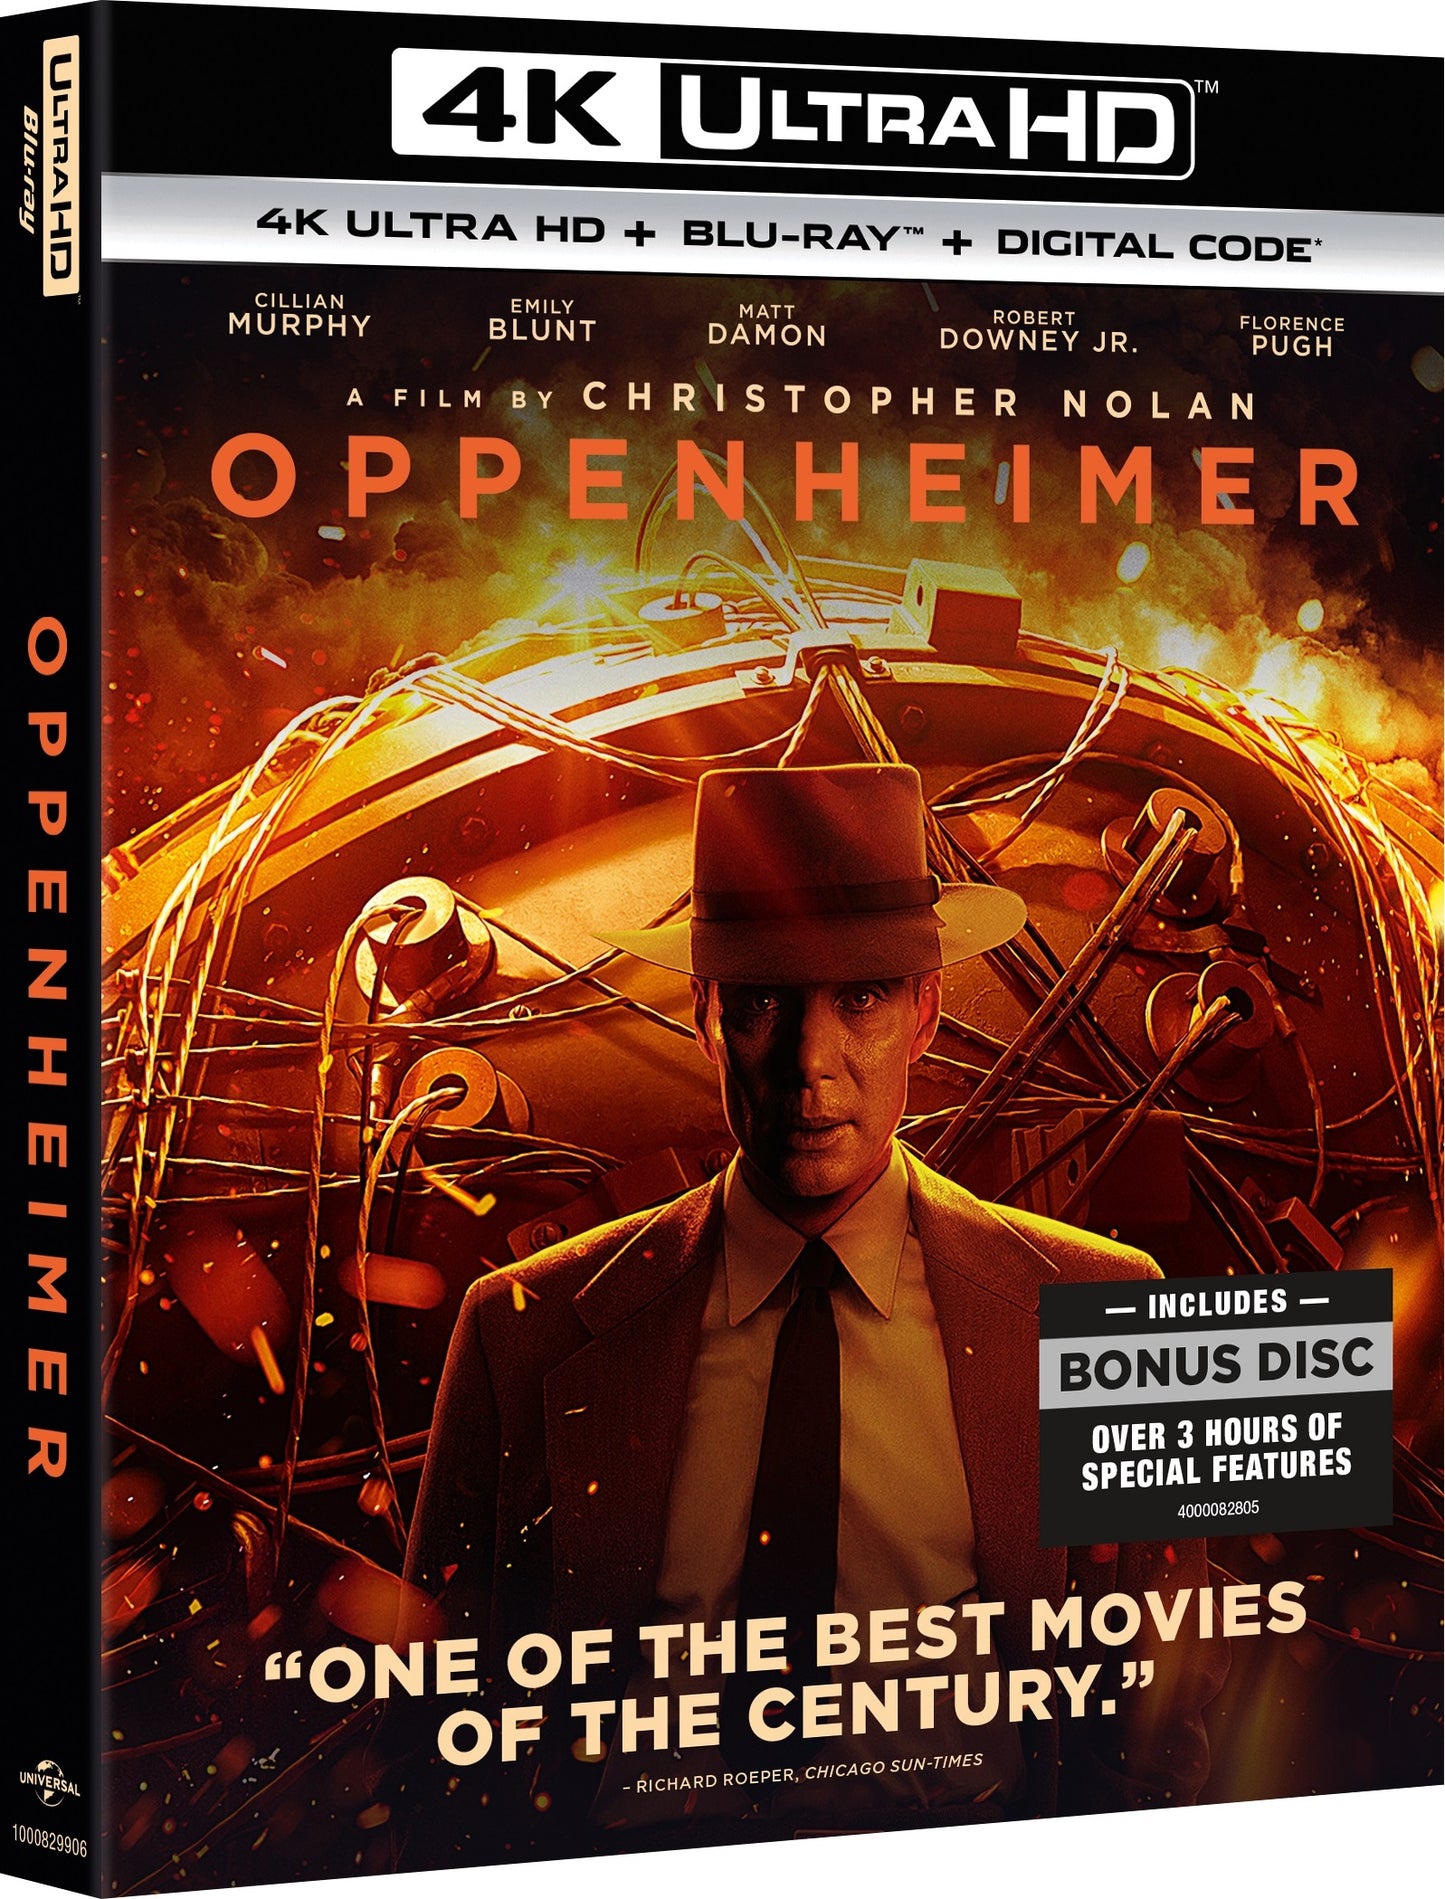 Oppenheimer 4K – Blurays For Everyone